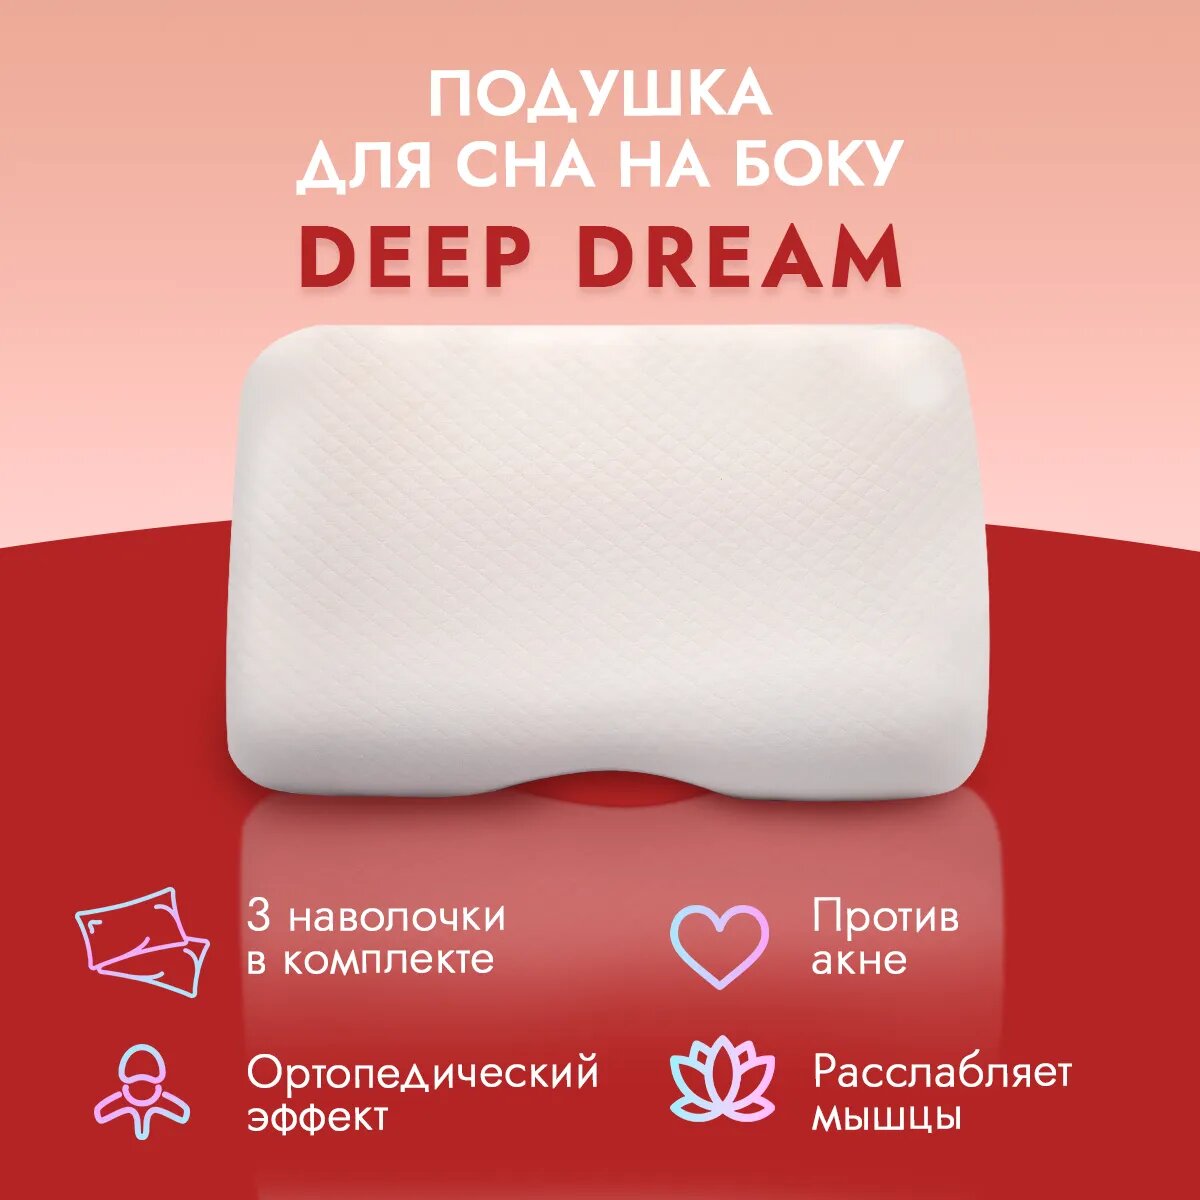 Анатомическая подушка LoliDream под плечо Deep Dream